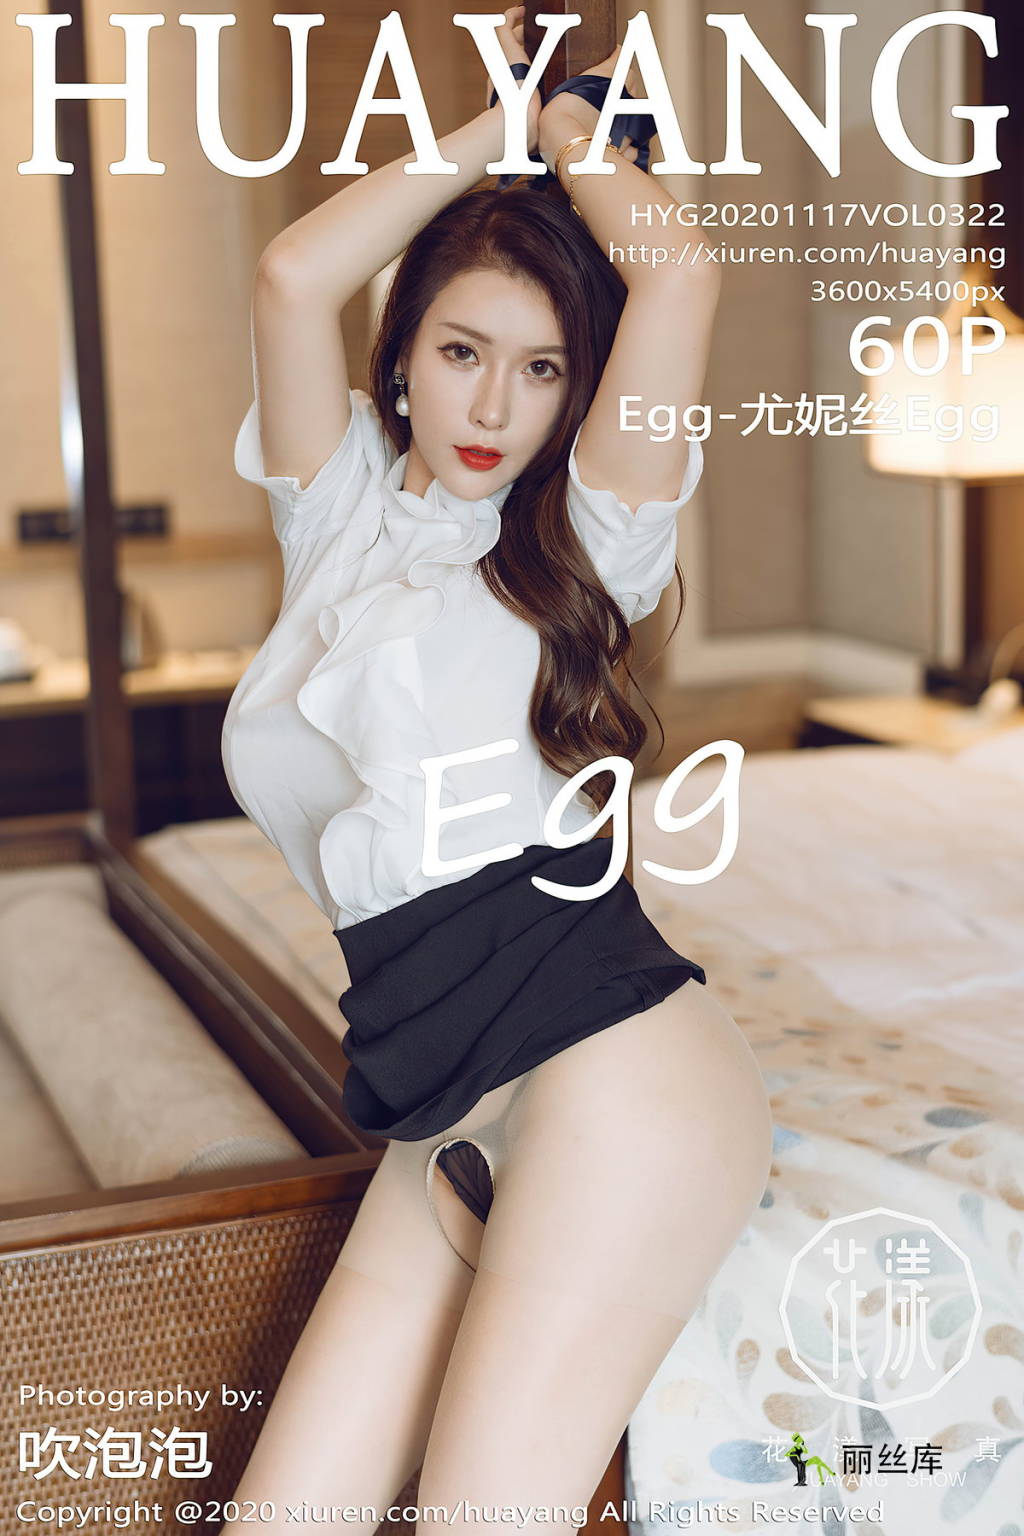 HuaYang 2020.11.17 No.322 Egg-˿Egg_˿